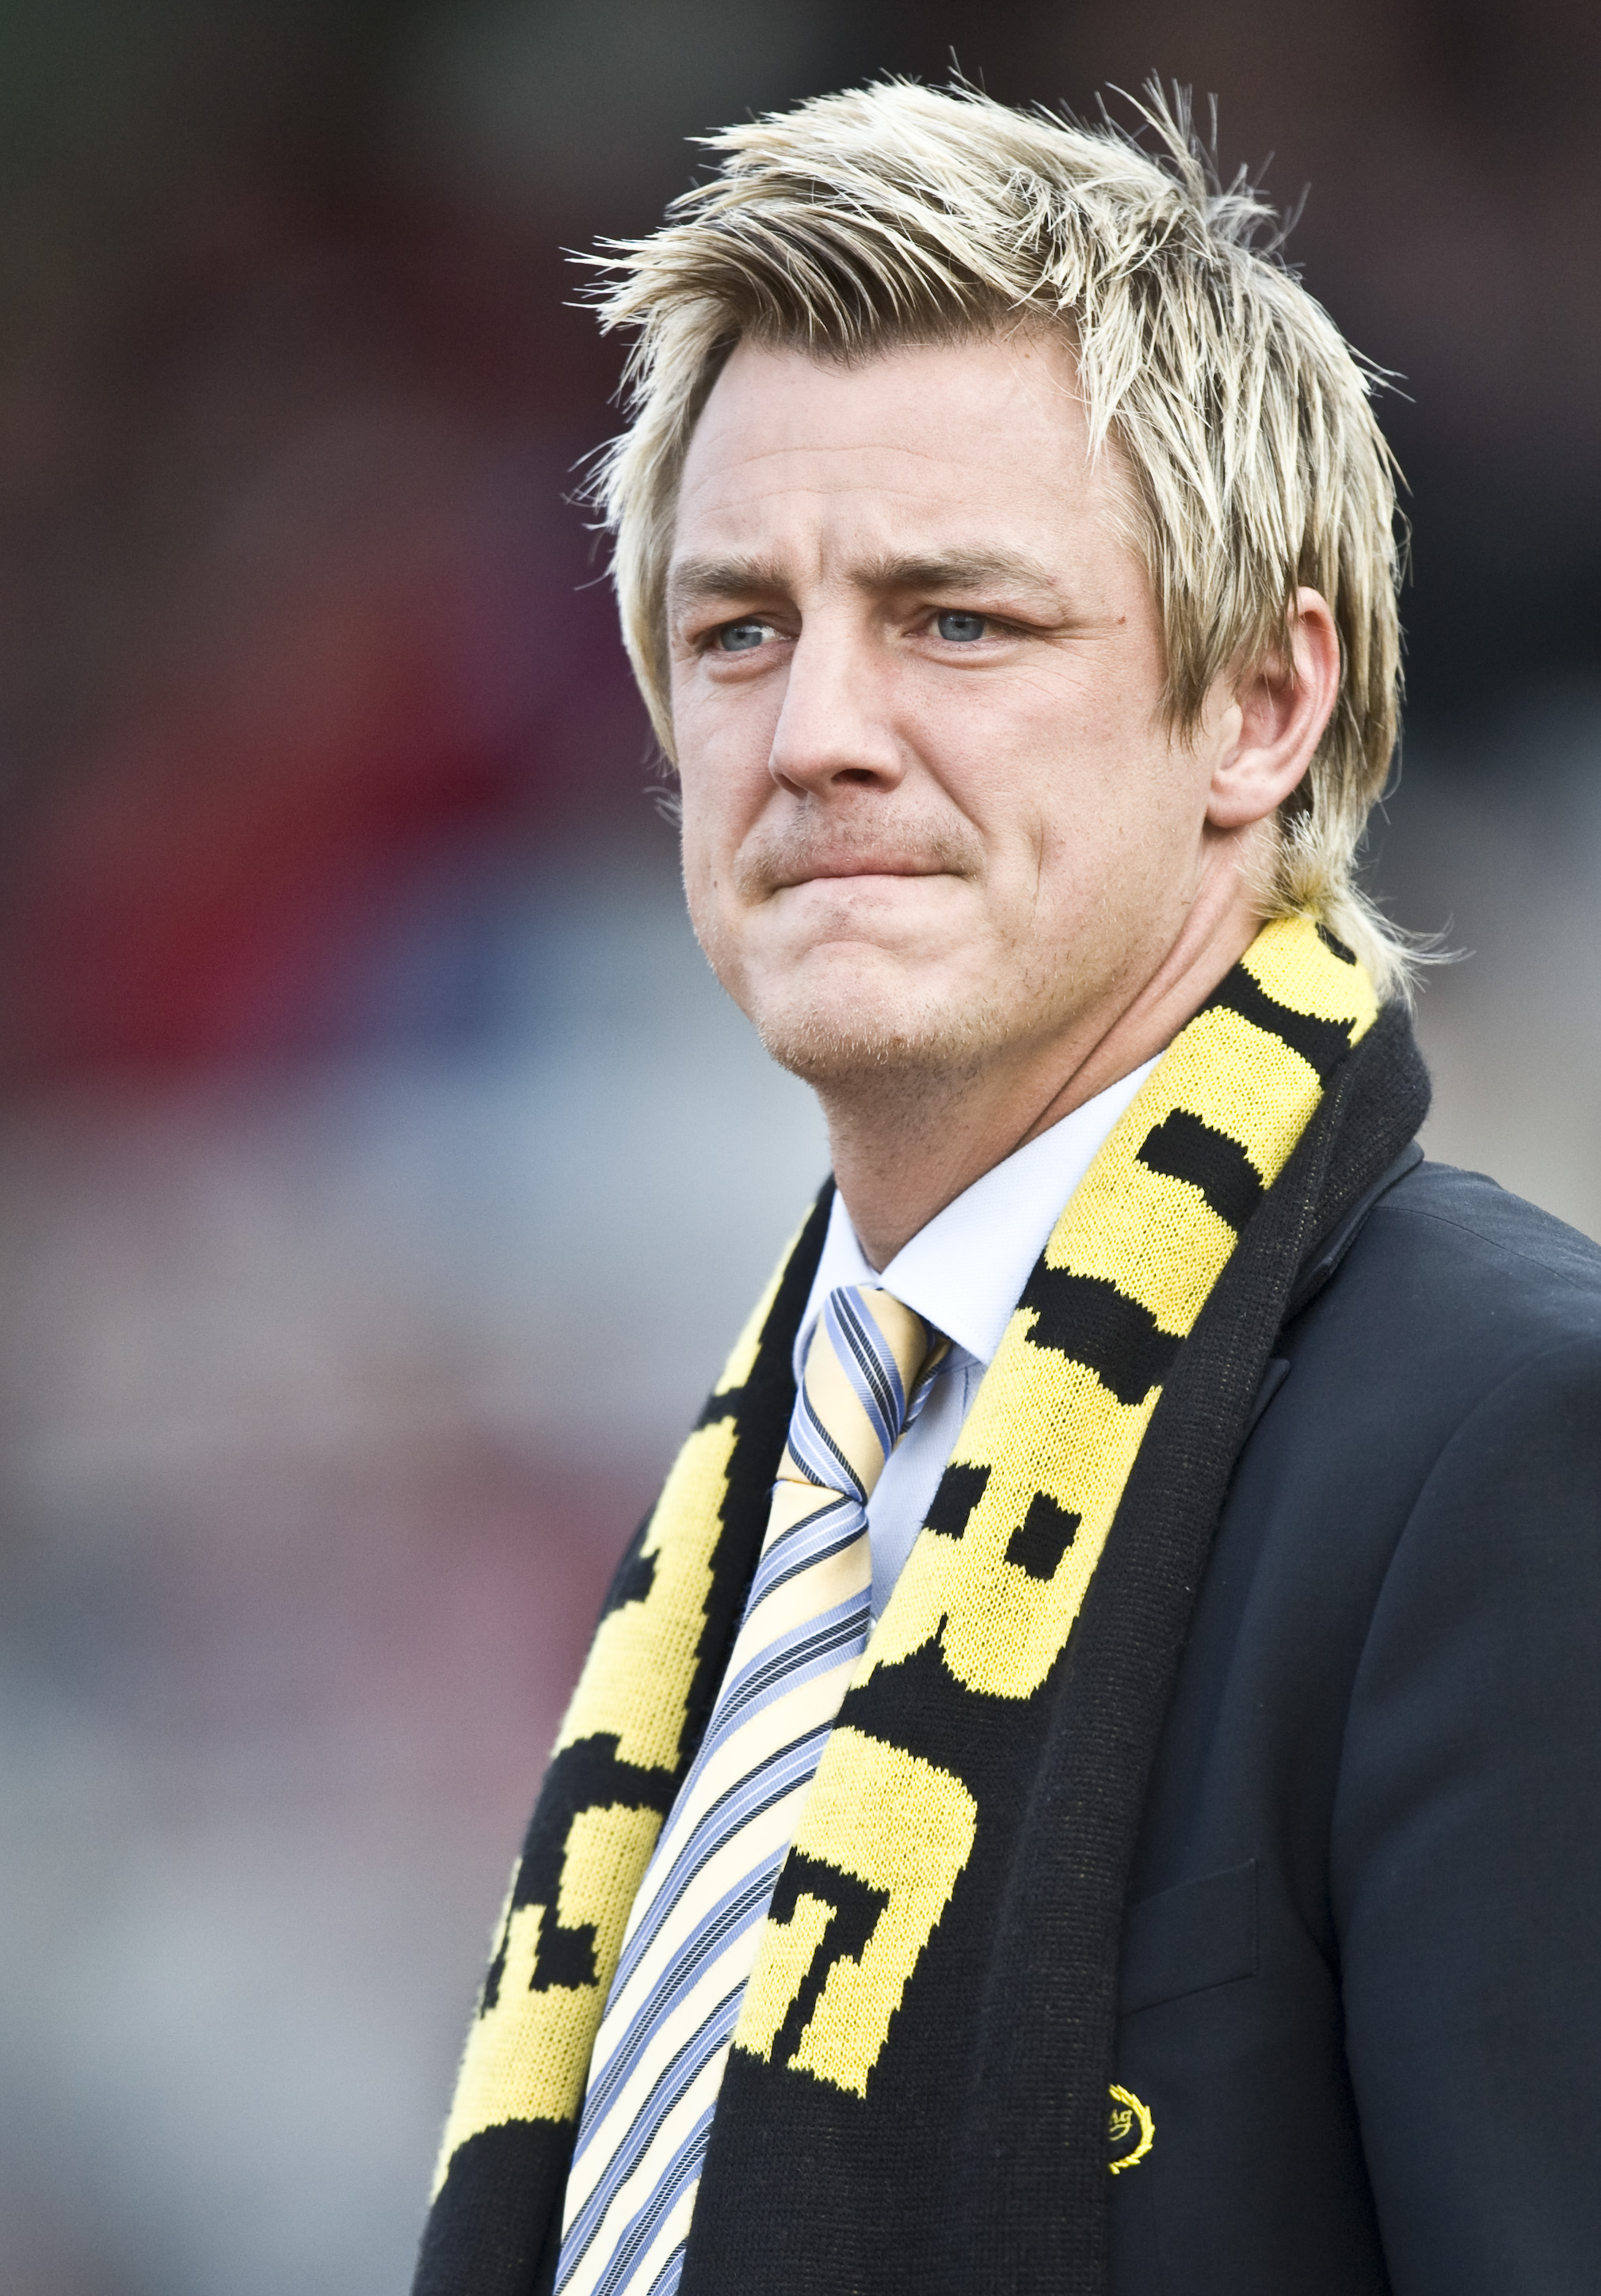 Idag är Mathias Svensson assisterande sportchef i klubben.